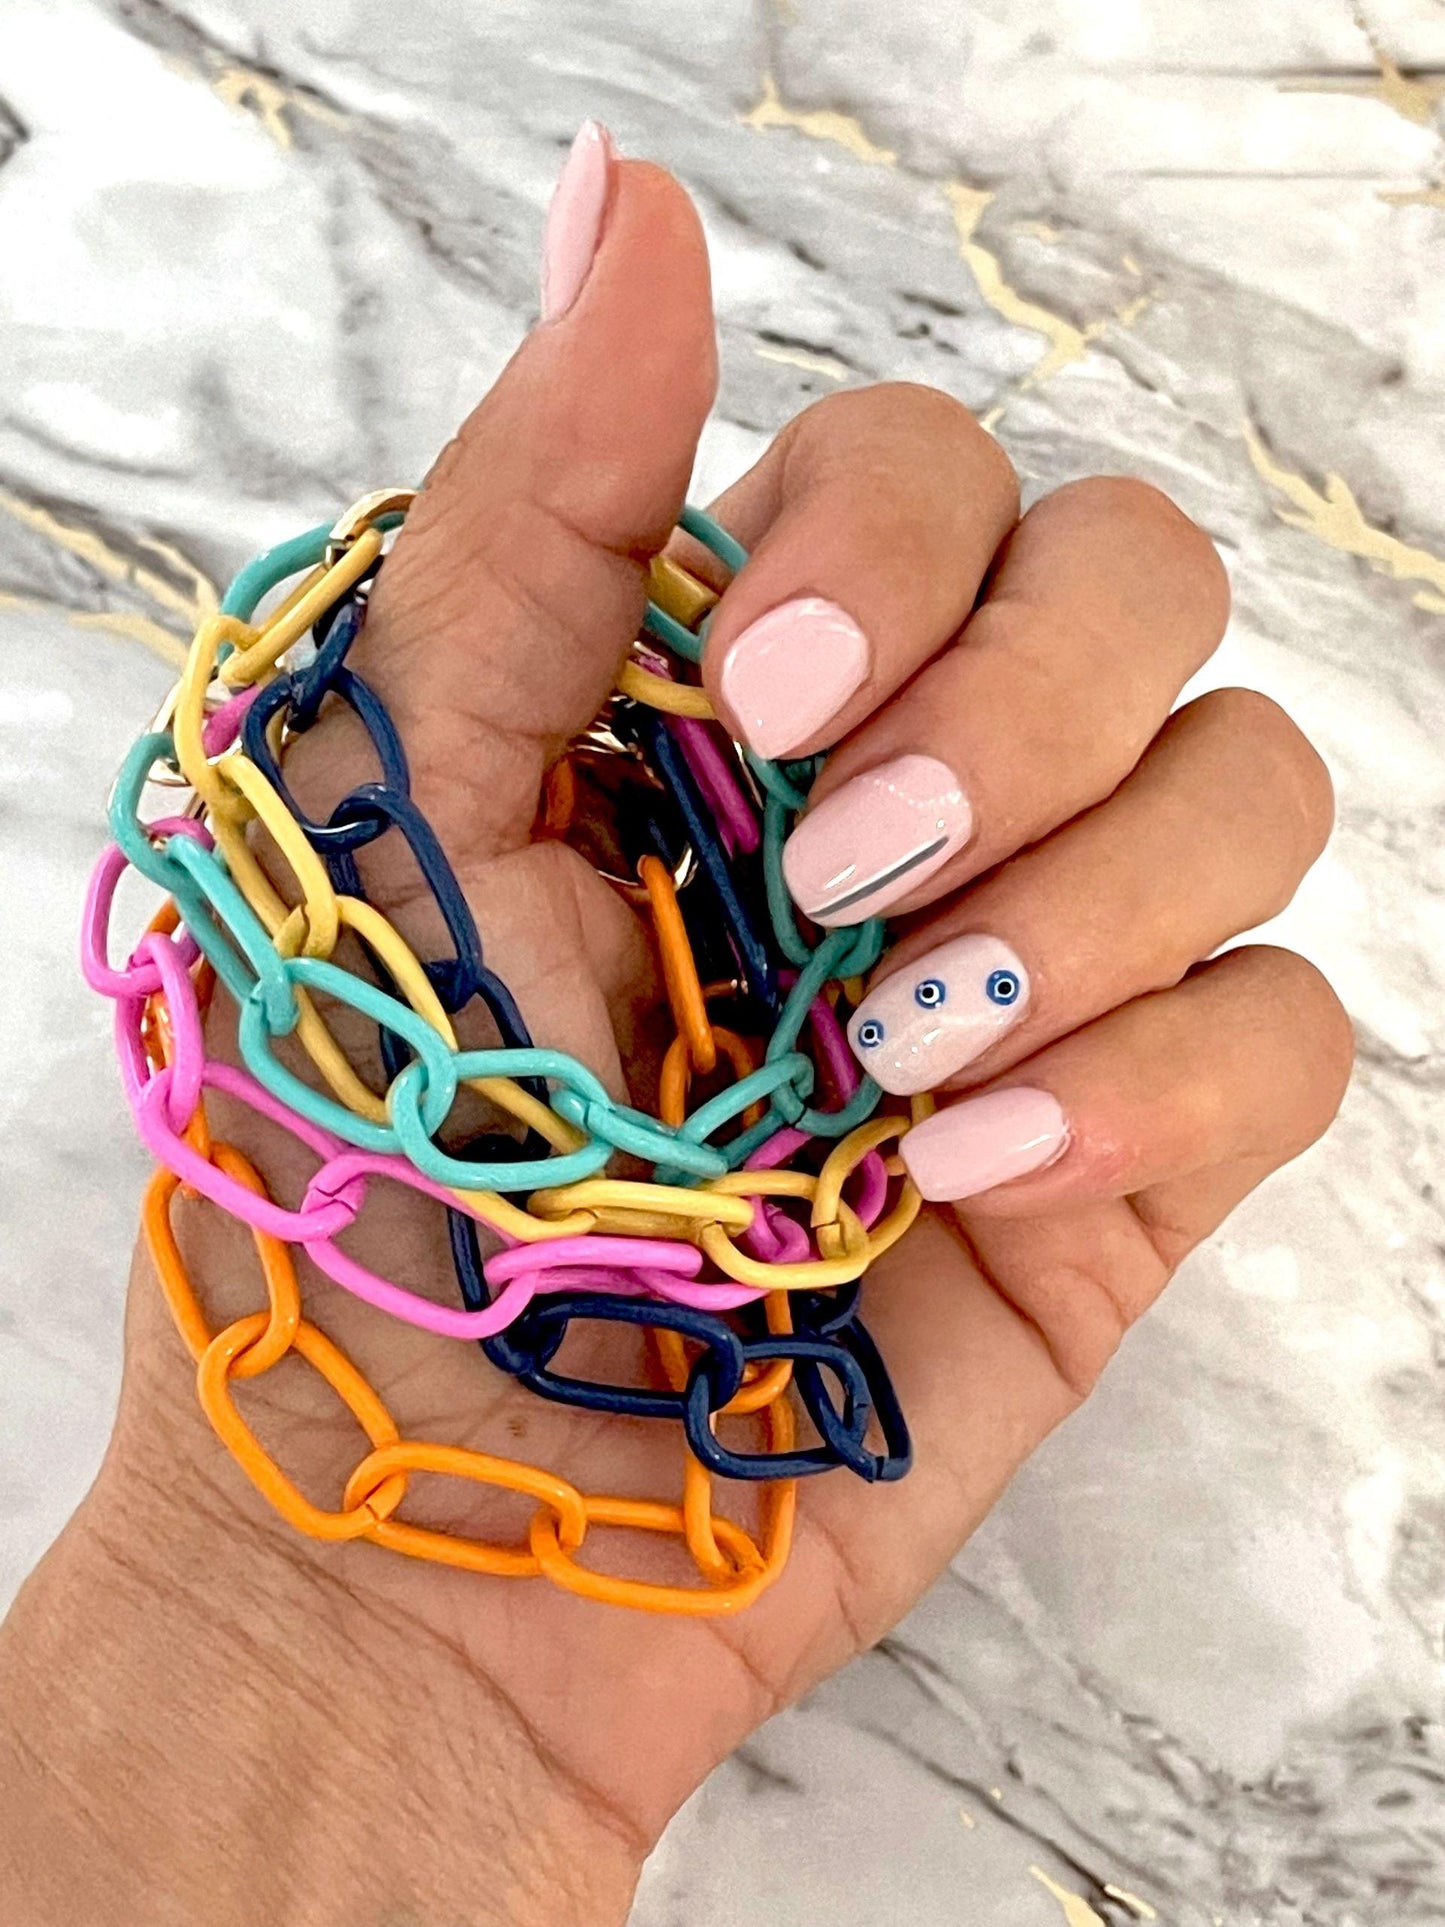 Colored Links Bracelets - Set of 5